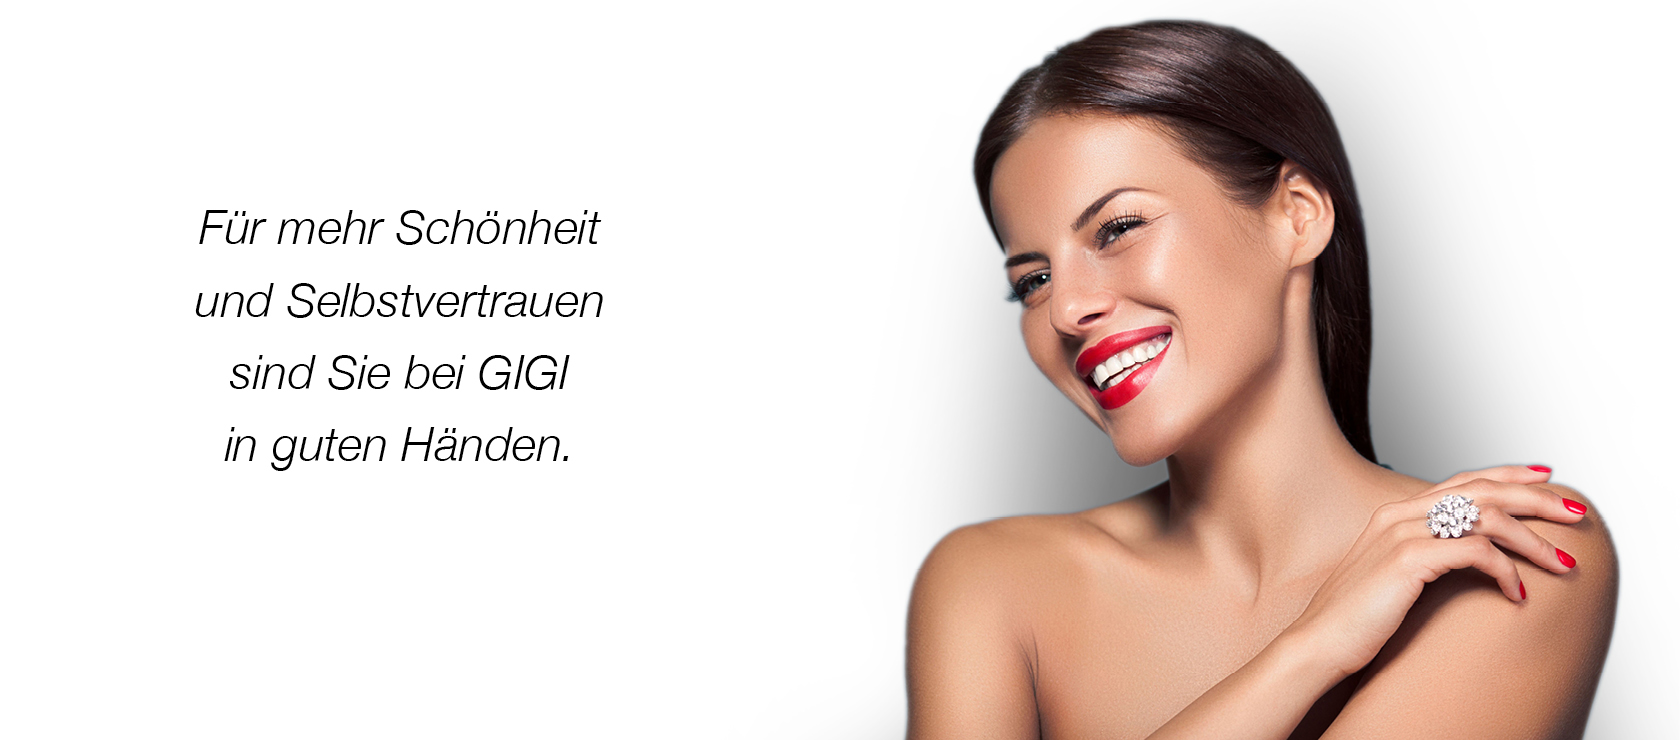 Für mehr Schönheit und Selbstvertrauen sind Sie bei Gigi in guten Händen.